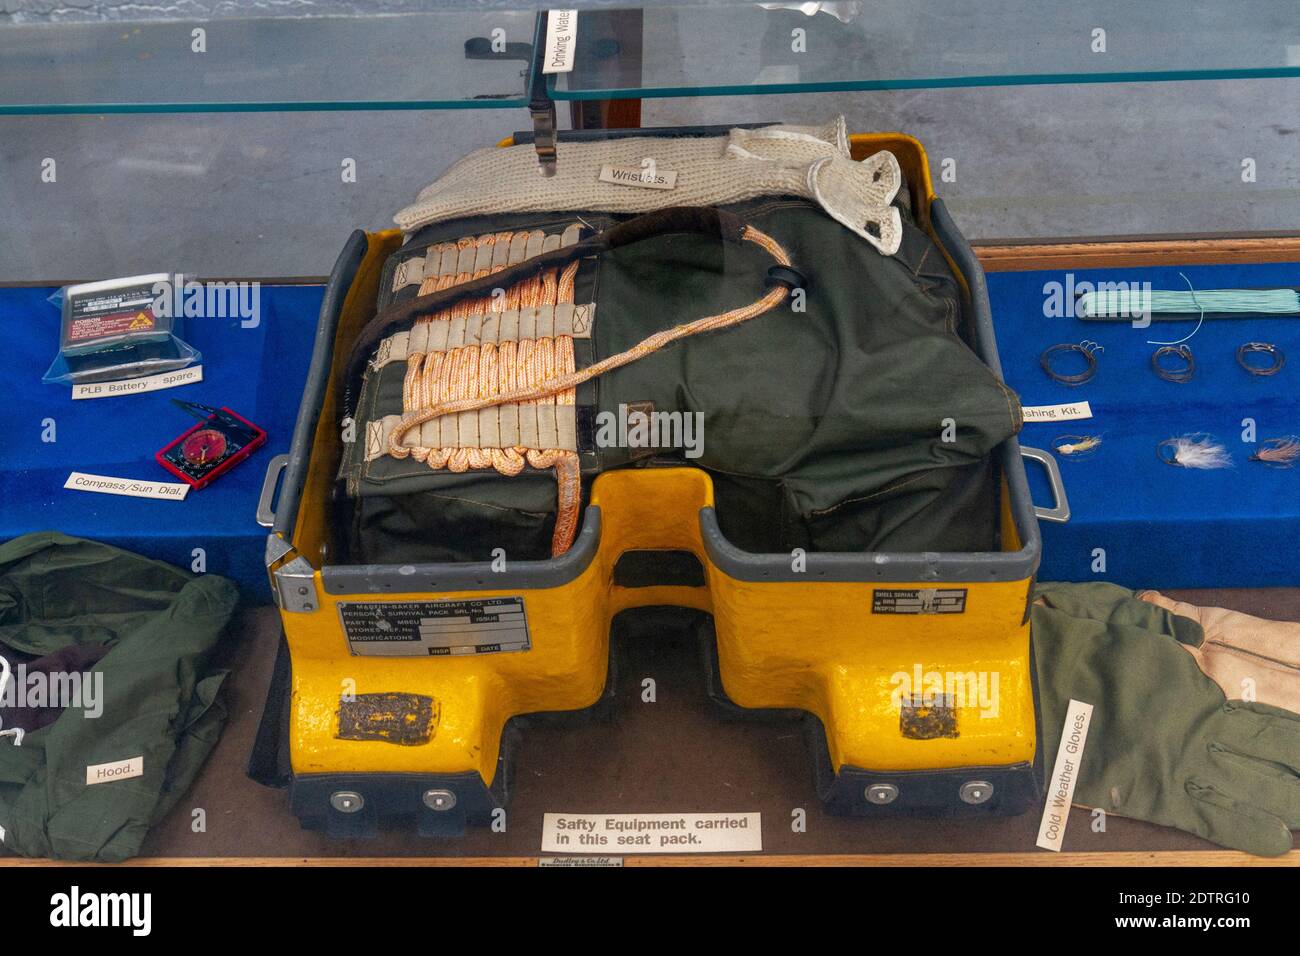 Sicherheitsausrüstung, die in einem Auswurfsitz (insbesondere einem Fallschirm), Newark Air Museum, in der Nähe von Newark-on-Trent, Nottinghamshire, Großbritannien, transportiert wird. Stockfoto